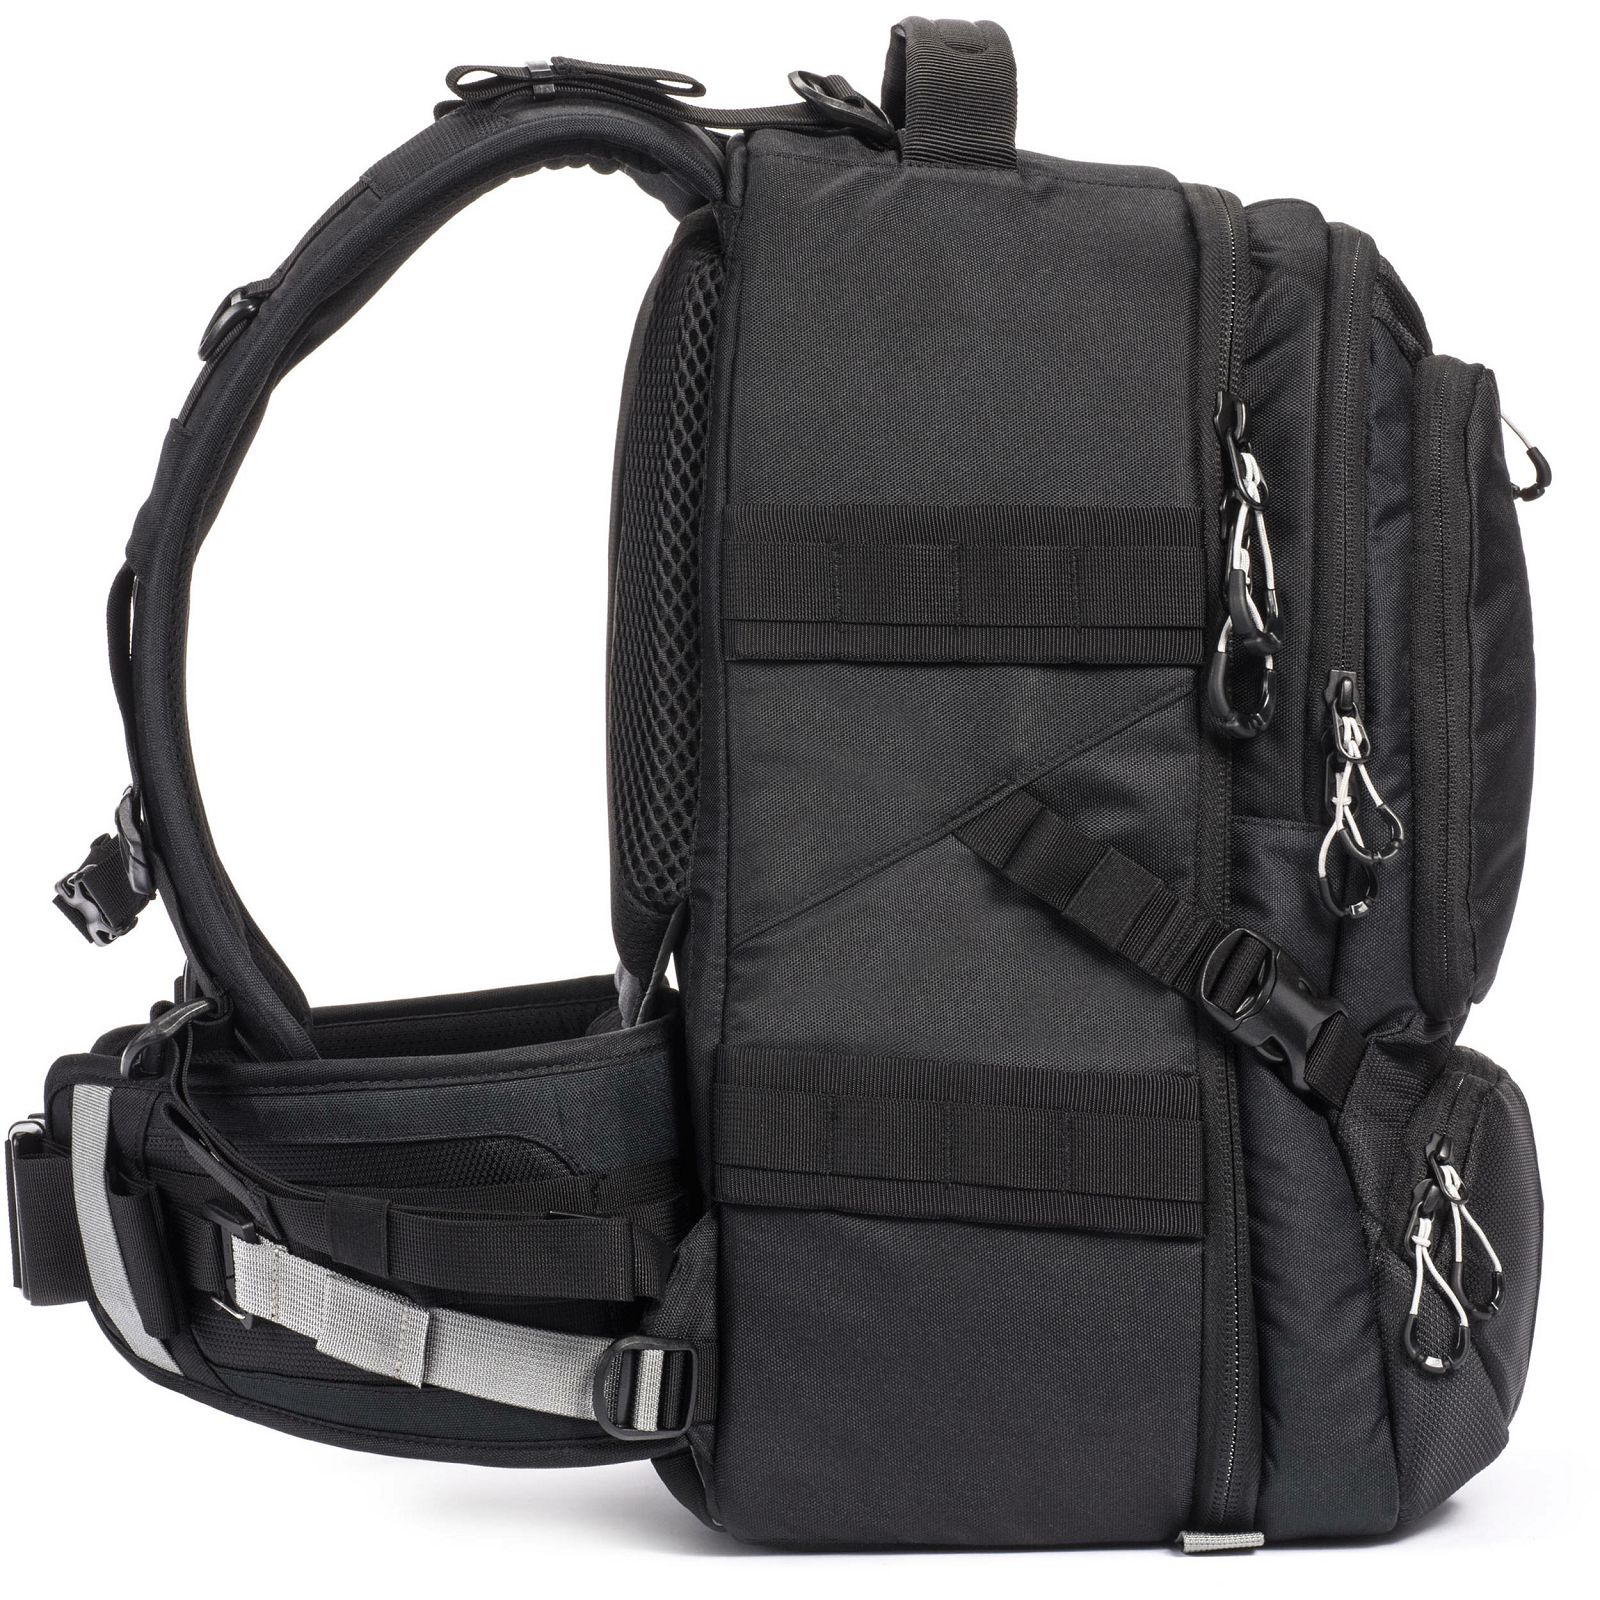 Tamrac Anvil 23 Backpack Black crni ruksak za foto opremu (T0240-1919)